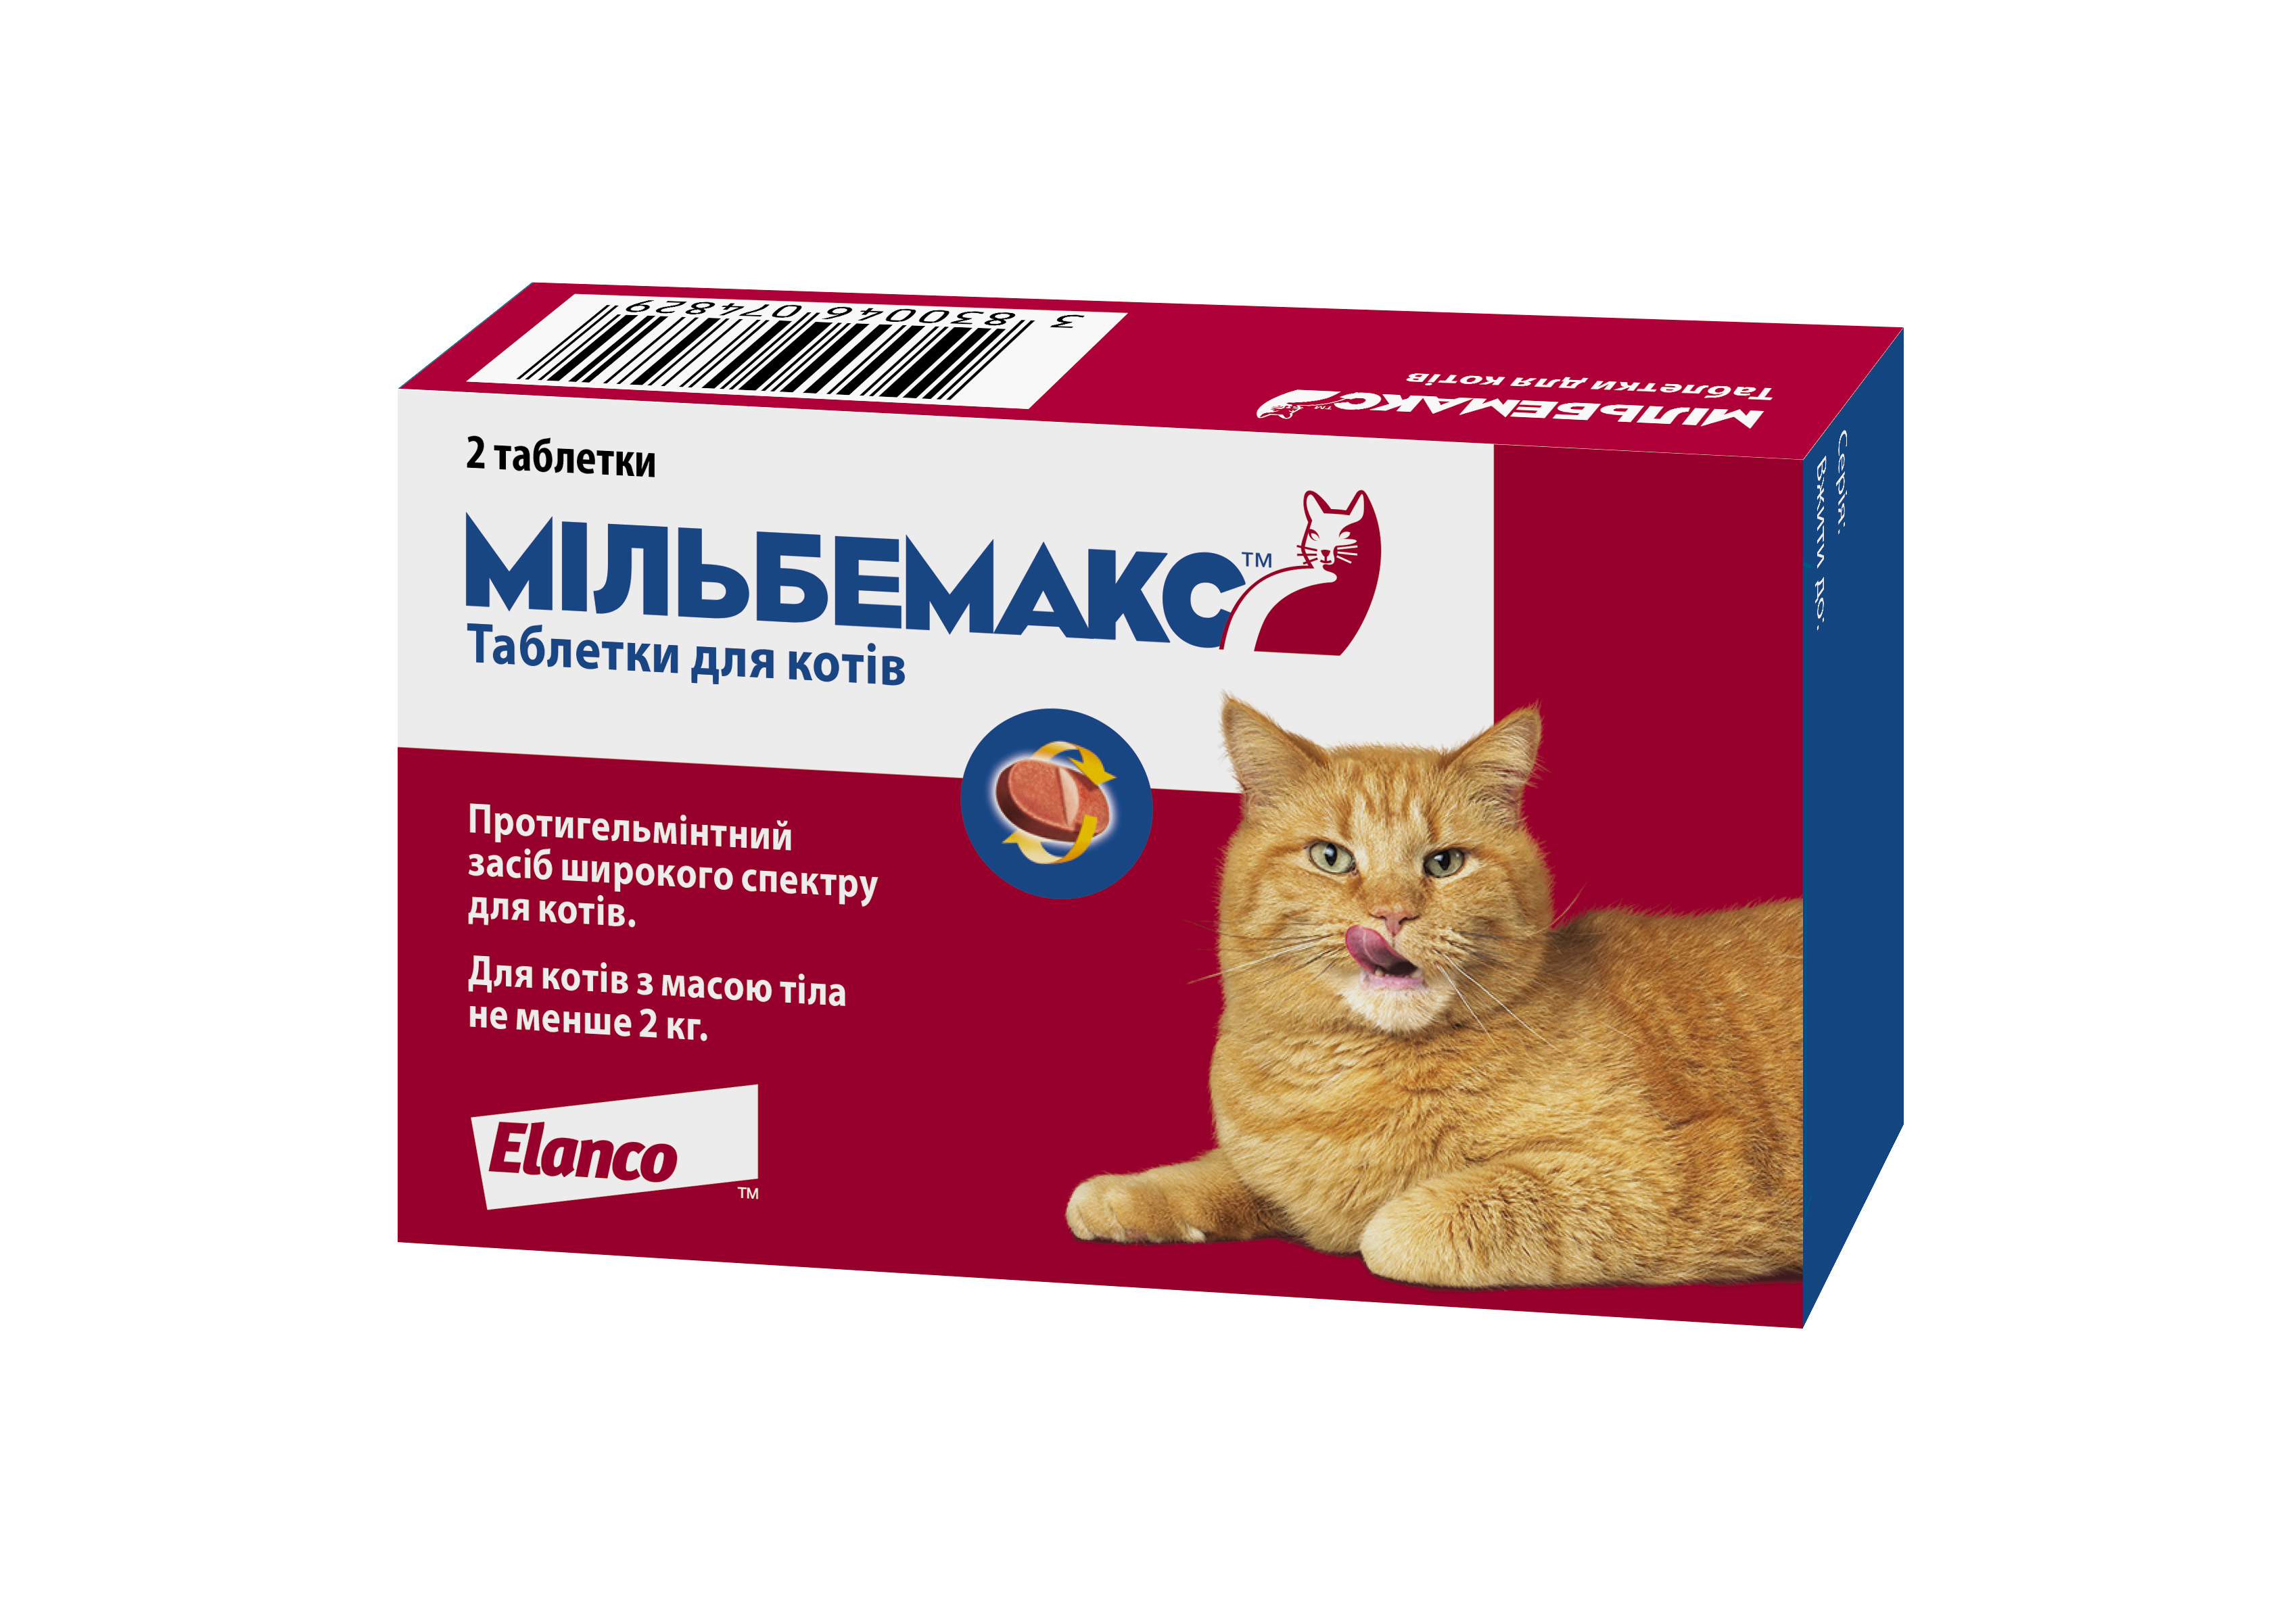 Таблетки Novartis Мильбемакс для кошек антигельминтные 2 т 11021